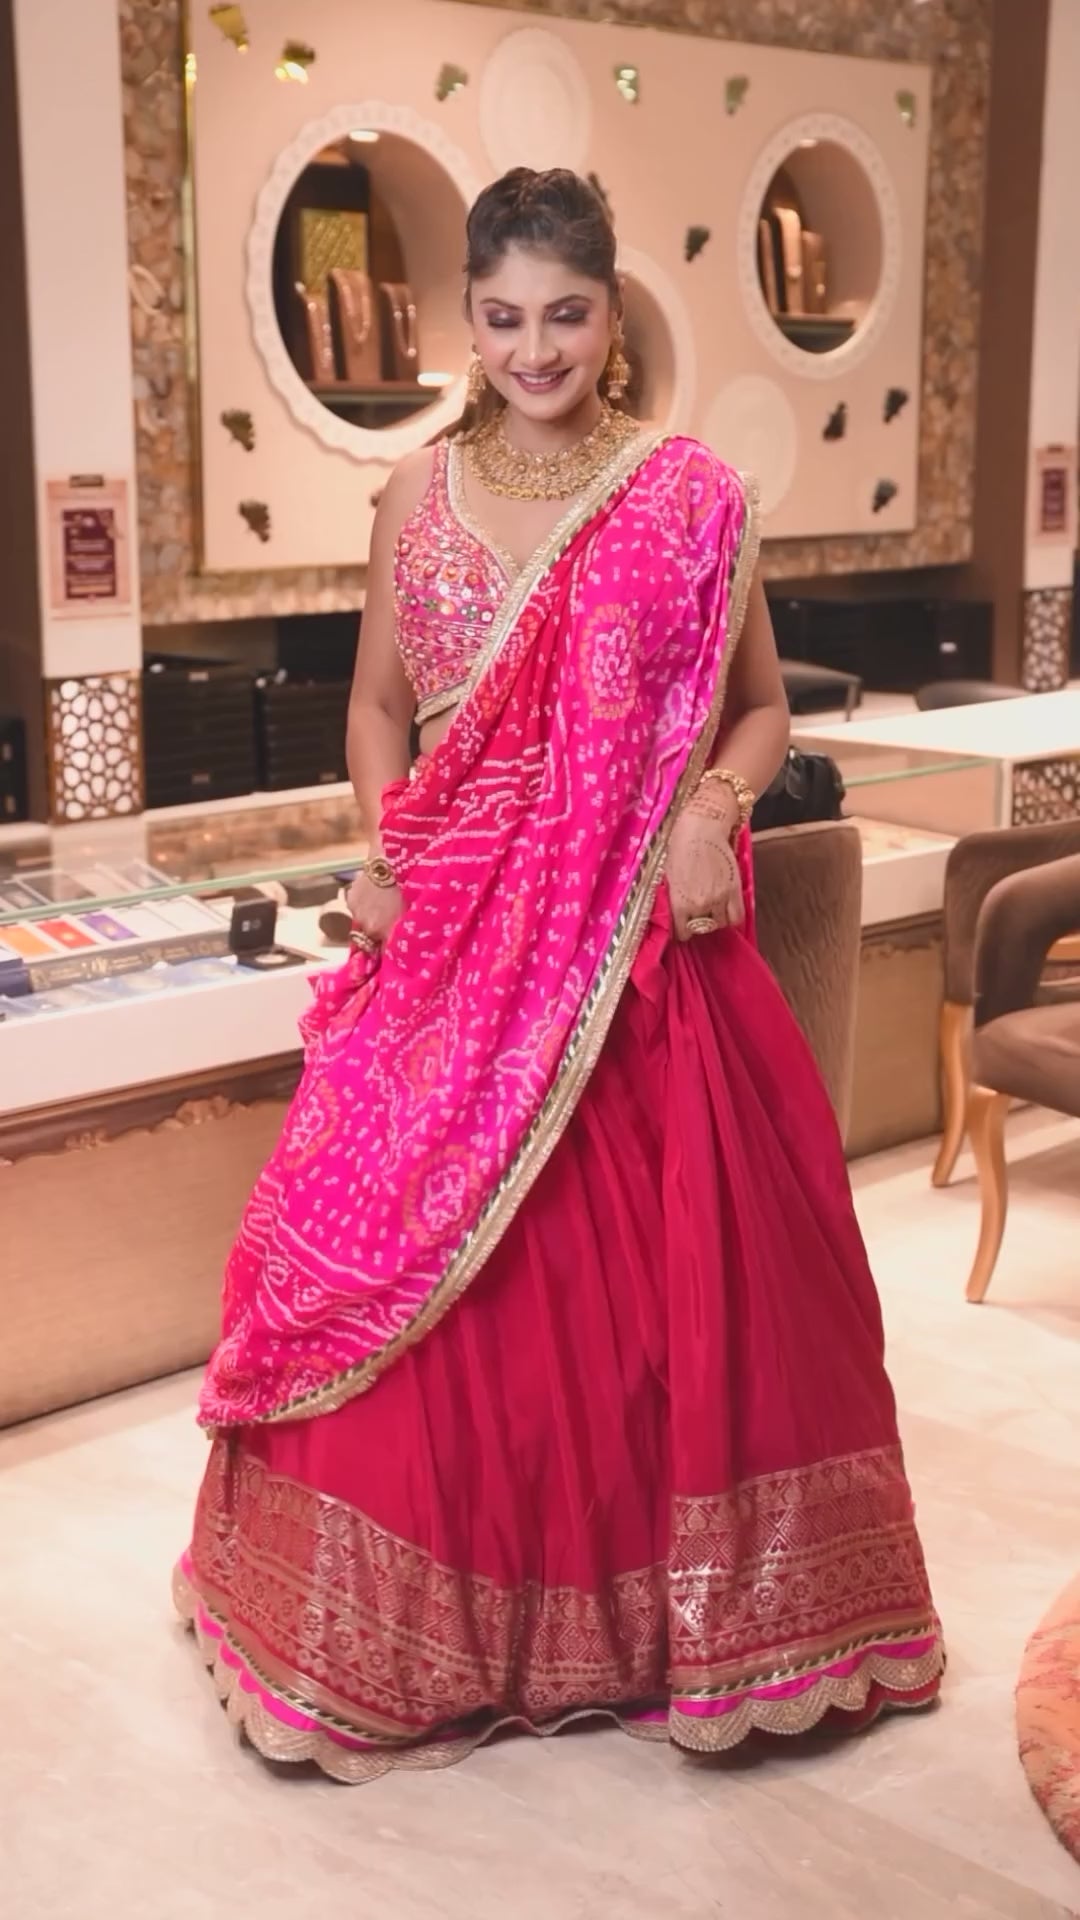 Elegant Rani-Colored Lehenga with Bandhej Dupatta - Sleeveless & Full Stitched